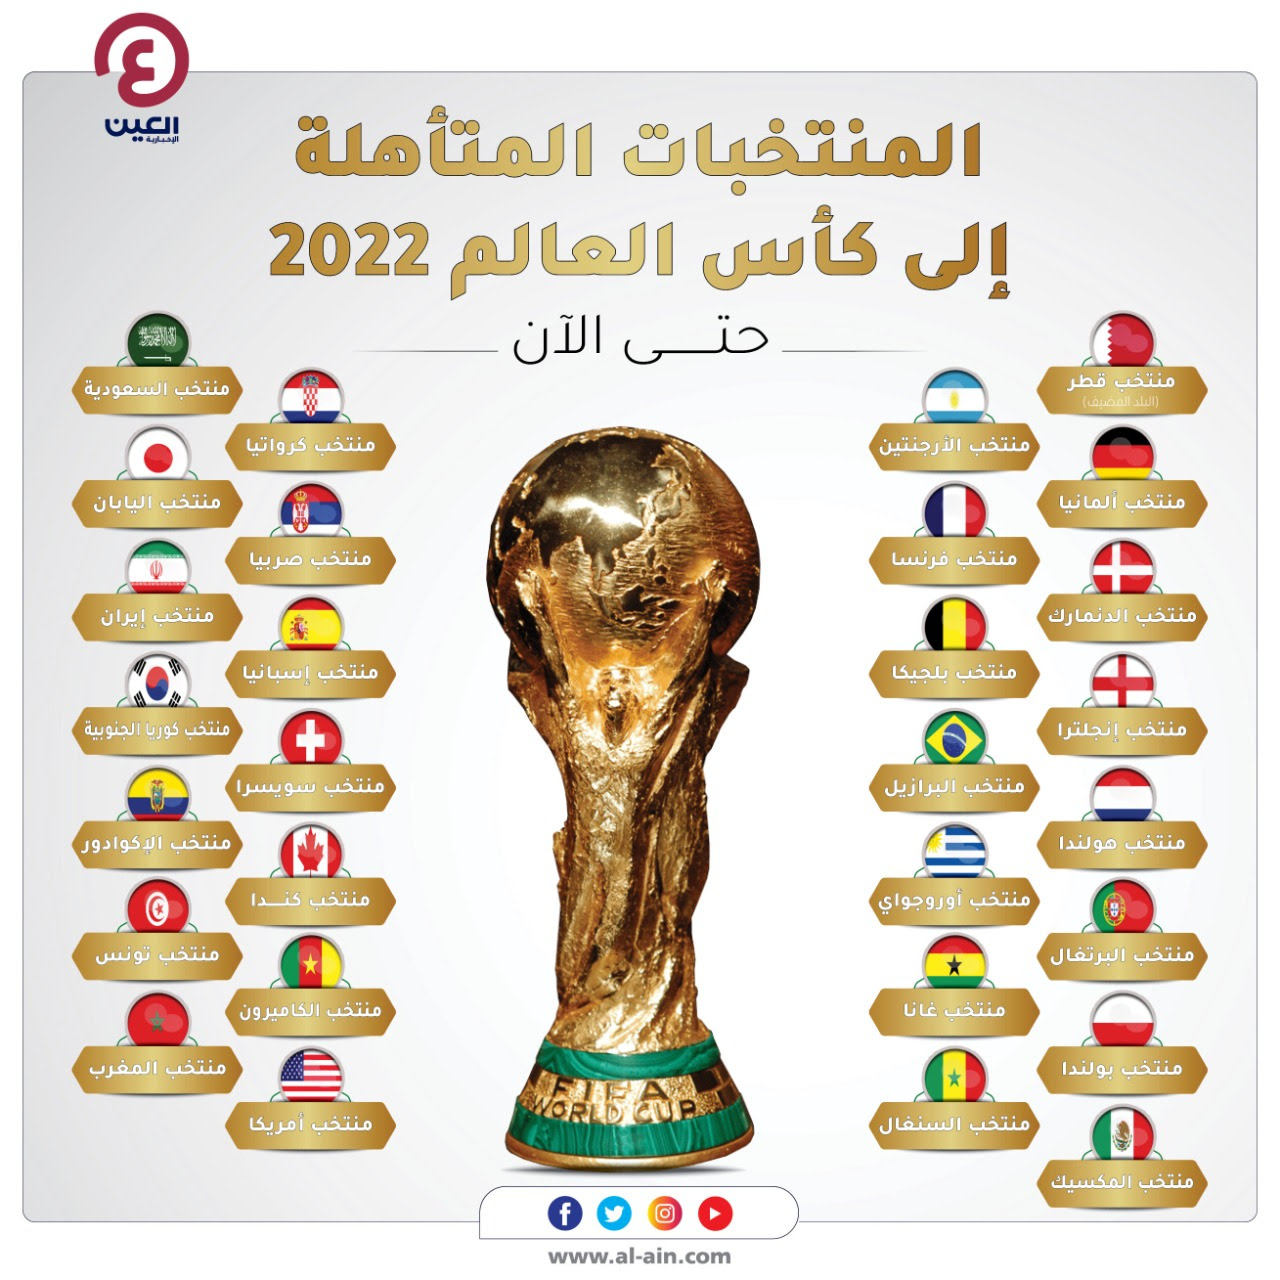 الموعد والقنوات والتصنيف.. كل ما تريد معرفته عن قرعة كأس العالم 2022